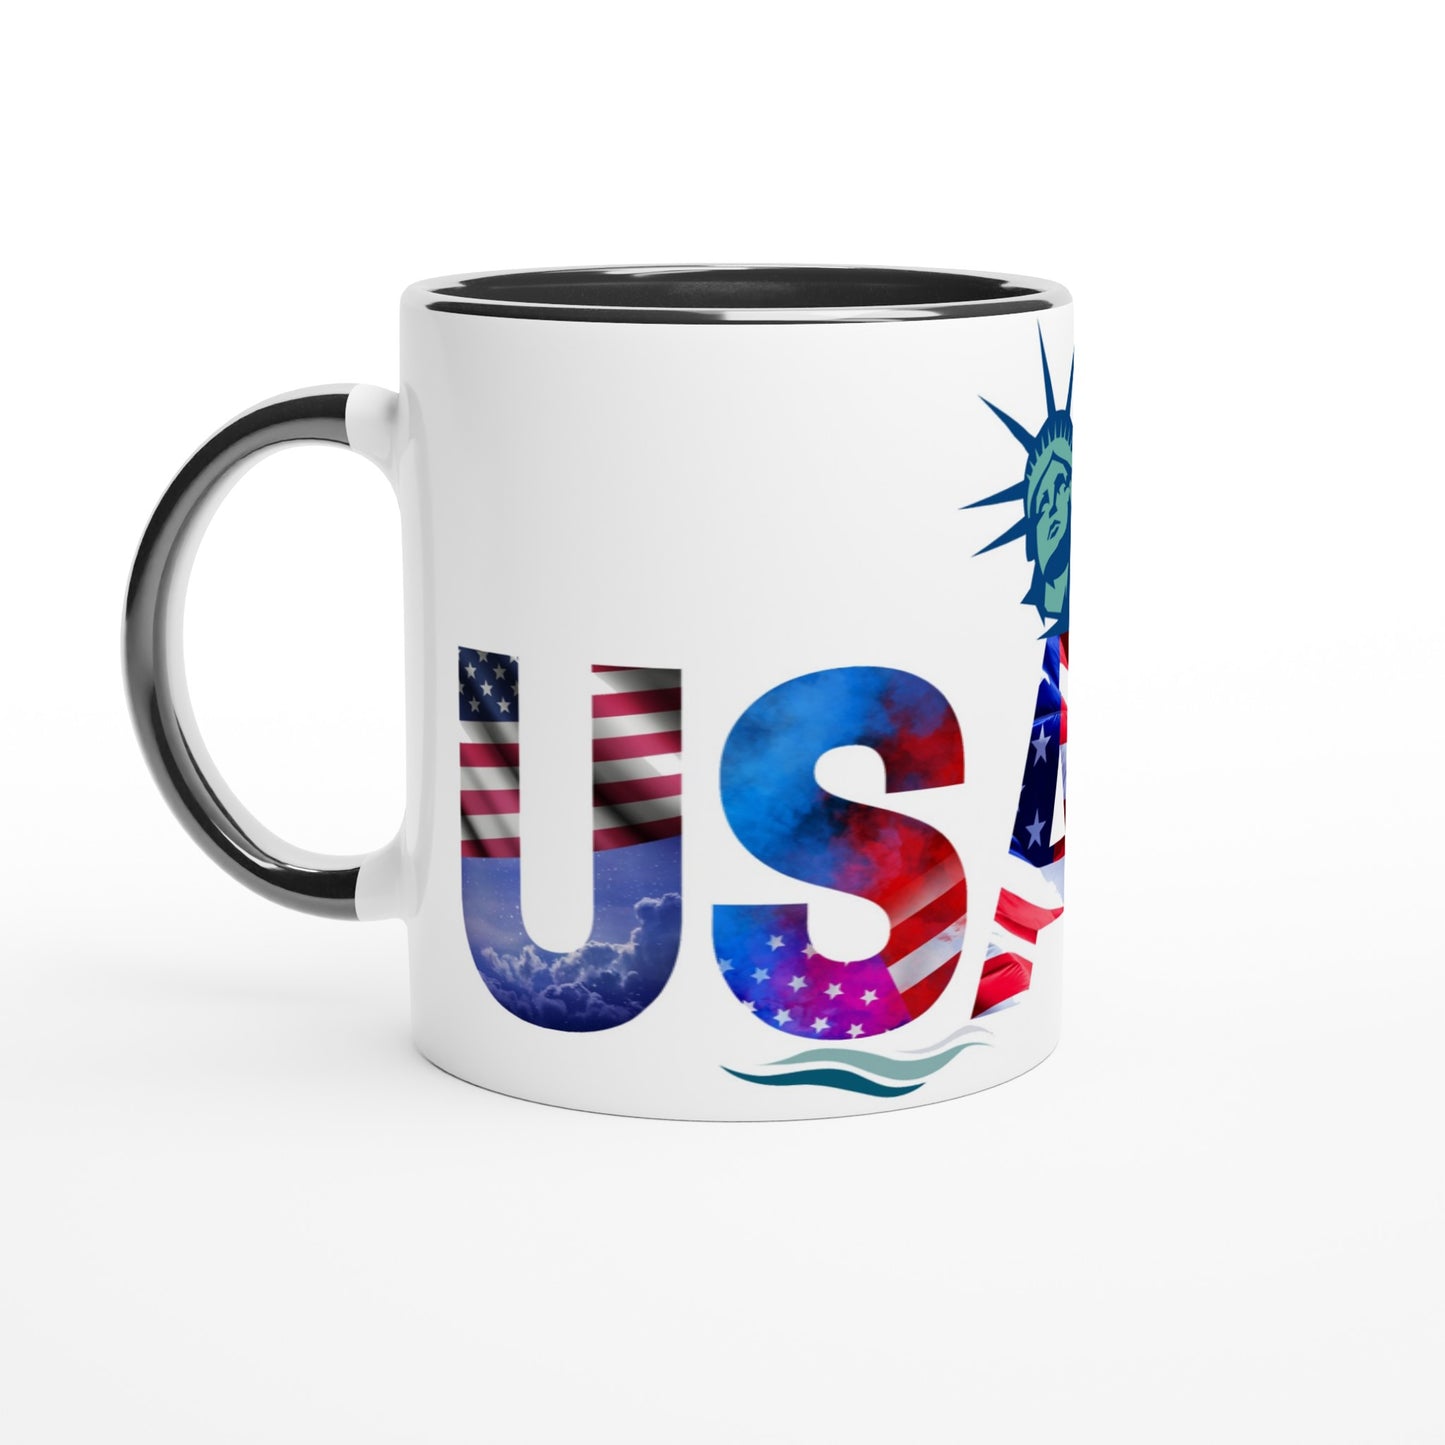 USA White 11oz Ceramic Mug with Color Inside